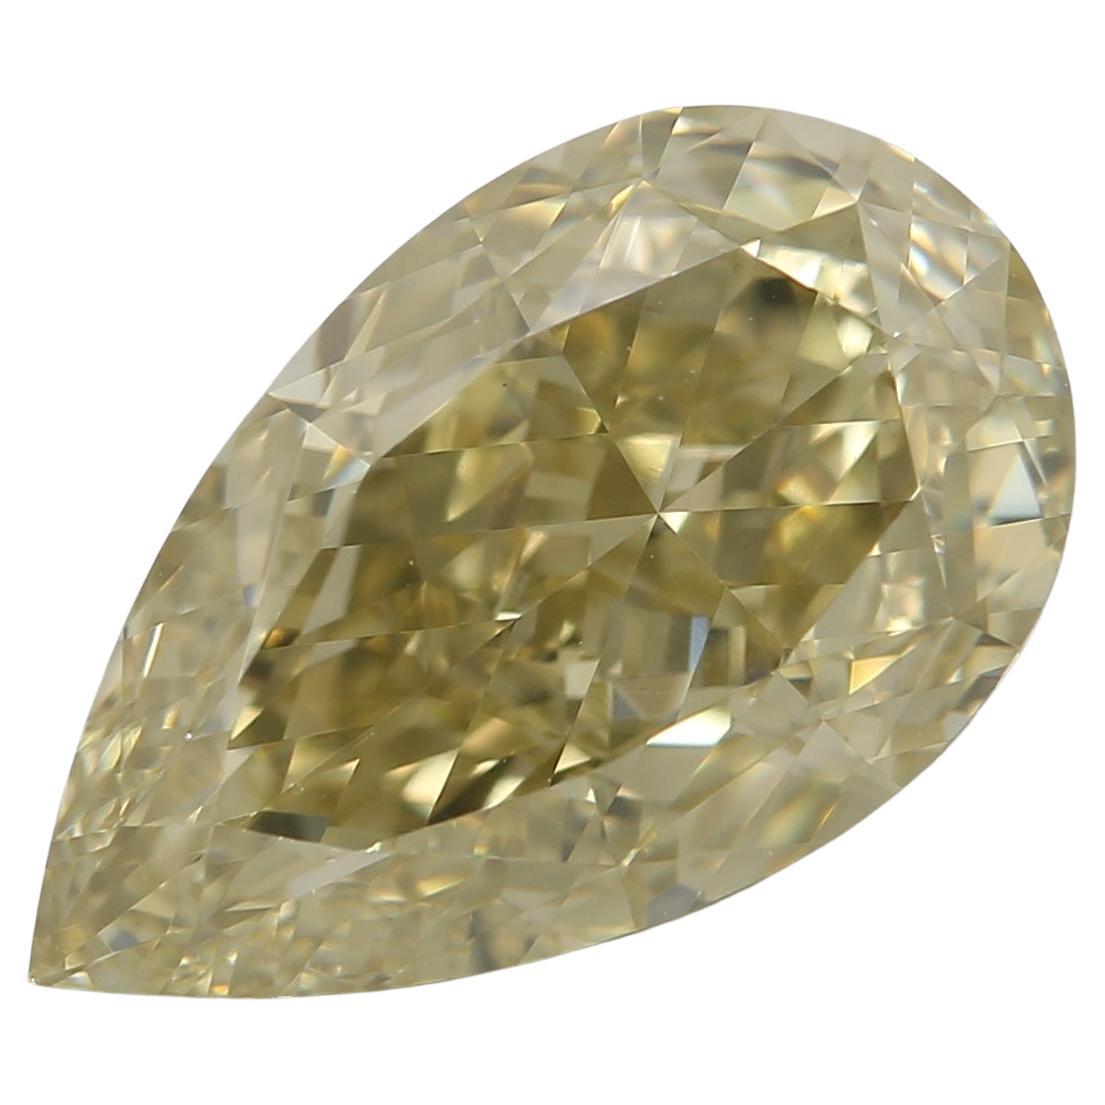 Diamant poire de 3,50 carats de couleur jaune verdâtre certifié GIA en vente